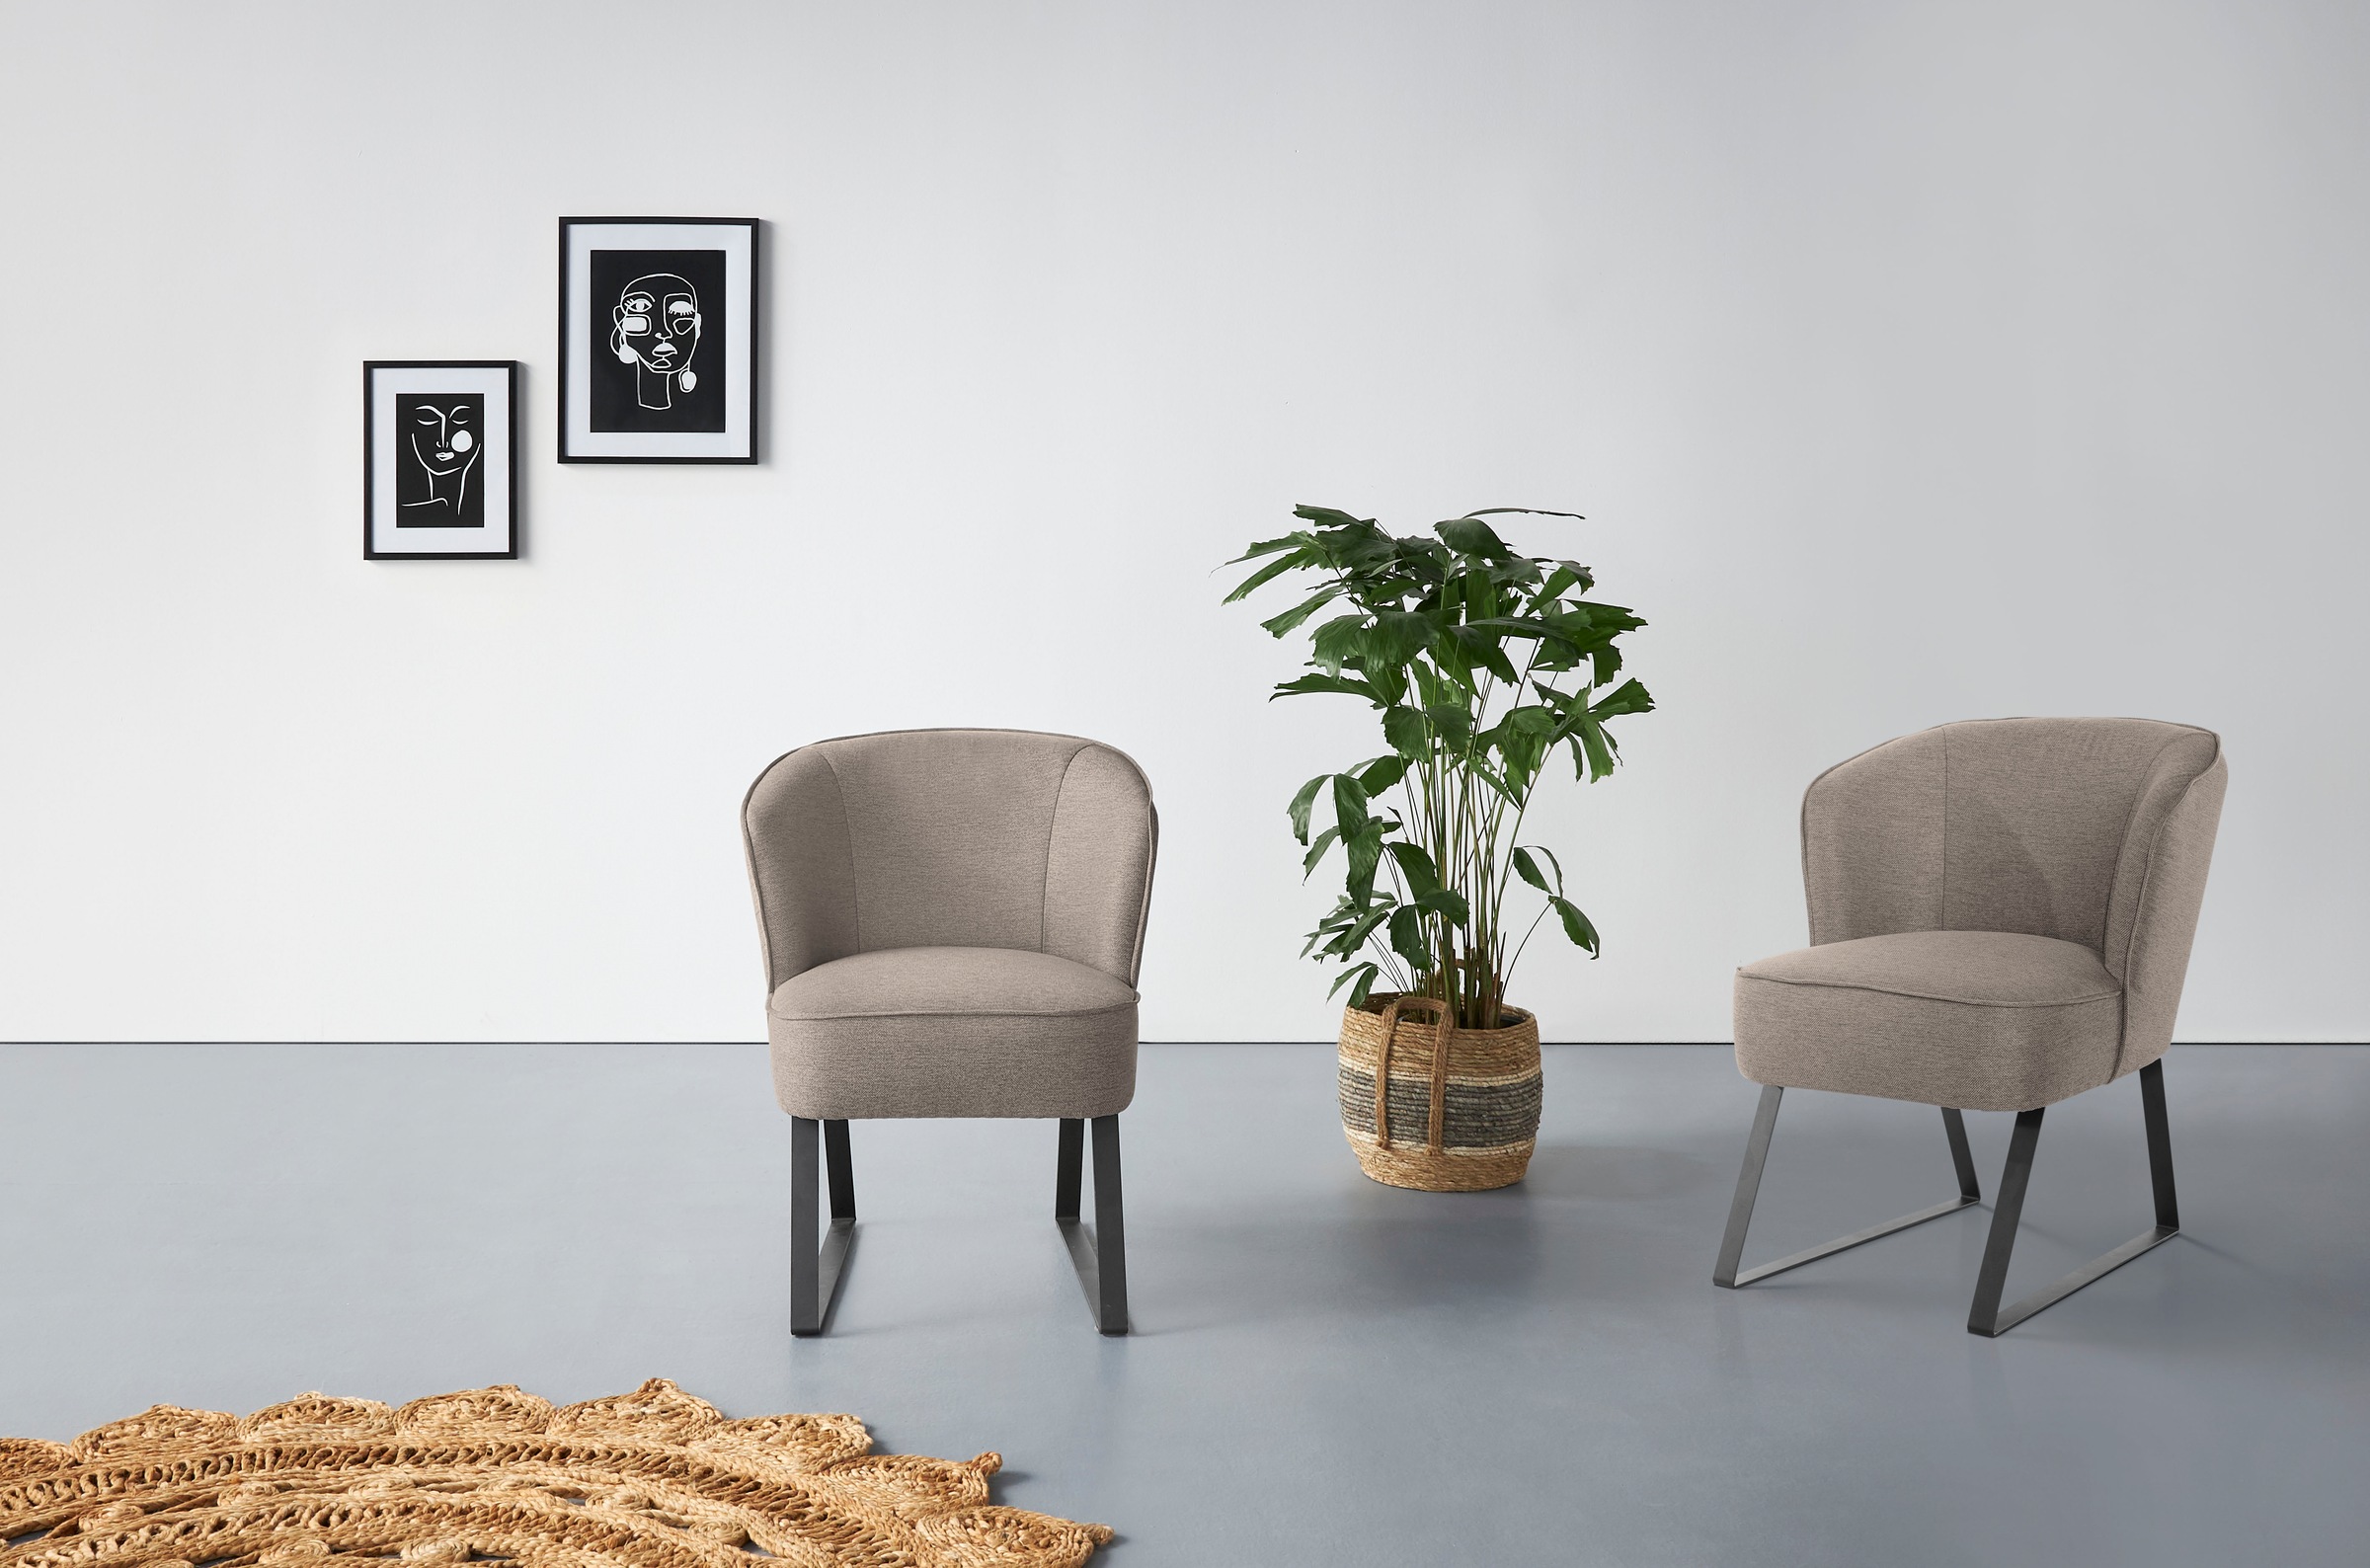 exxpo - sofa fashion Sessel »Americano«, mit Keder und Metallfüßen, Bezug in verschiedenen Qualitäten, 1 Stck.